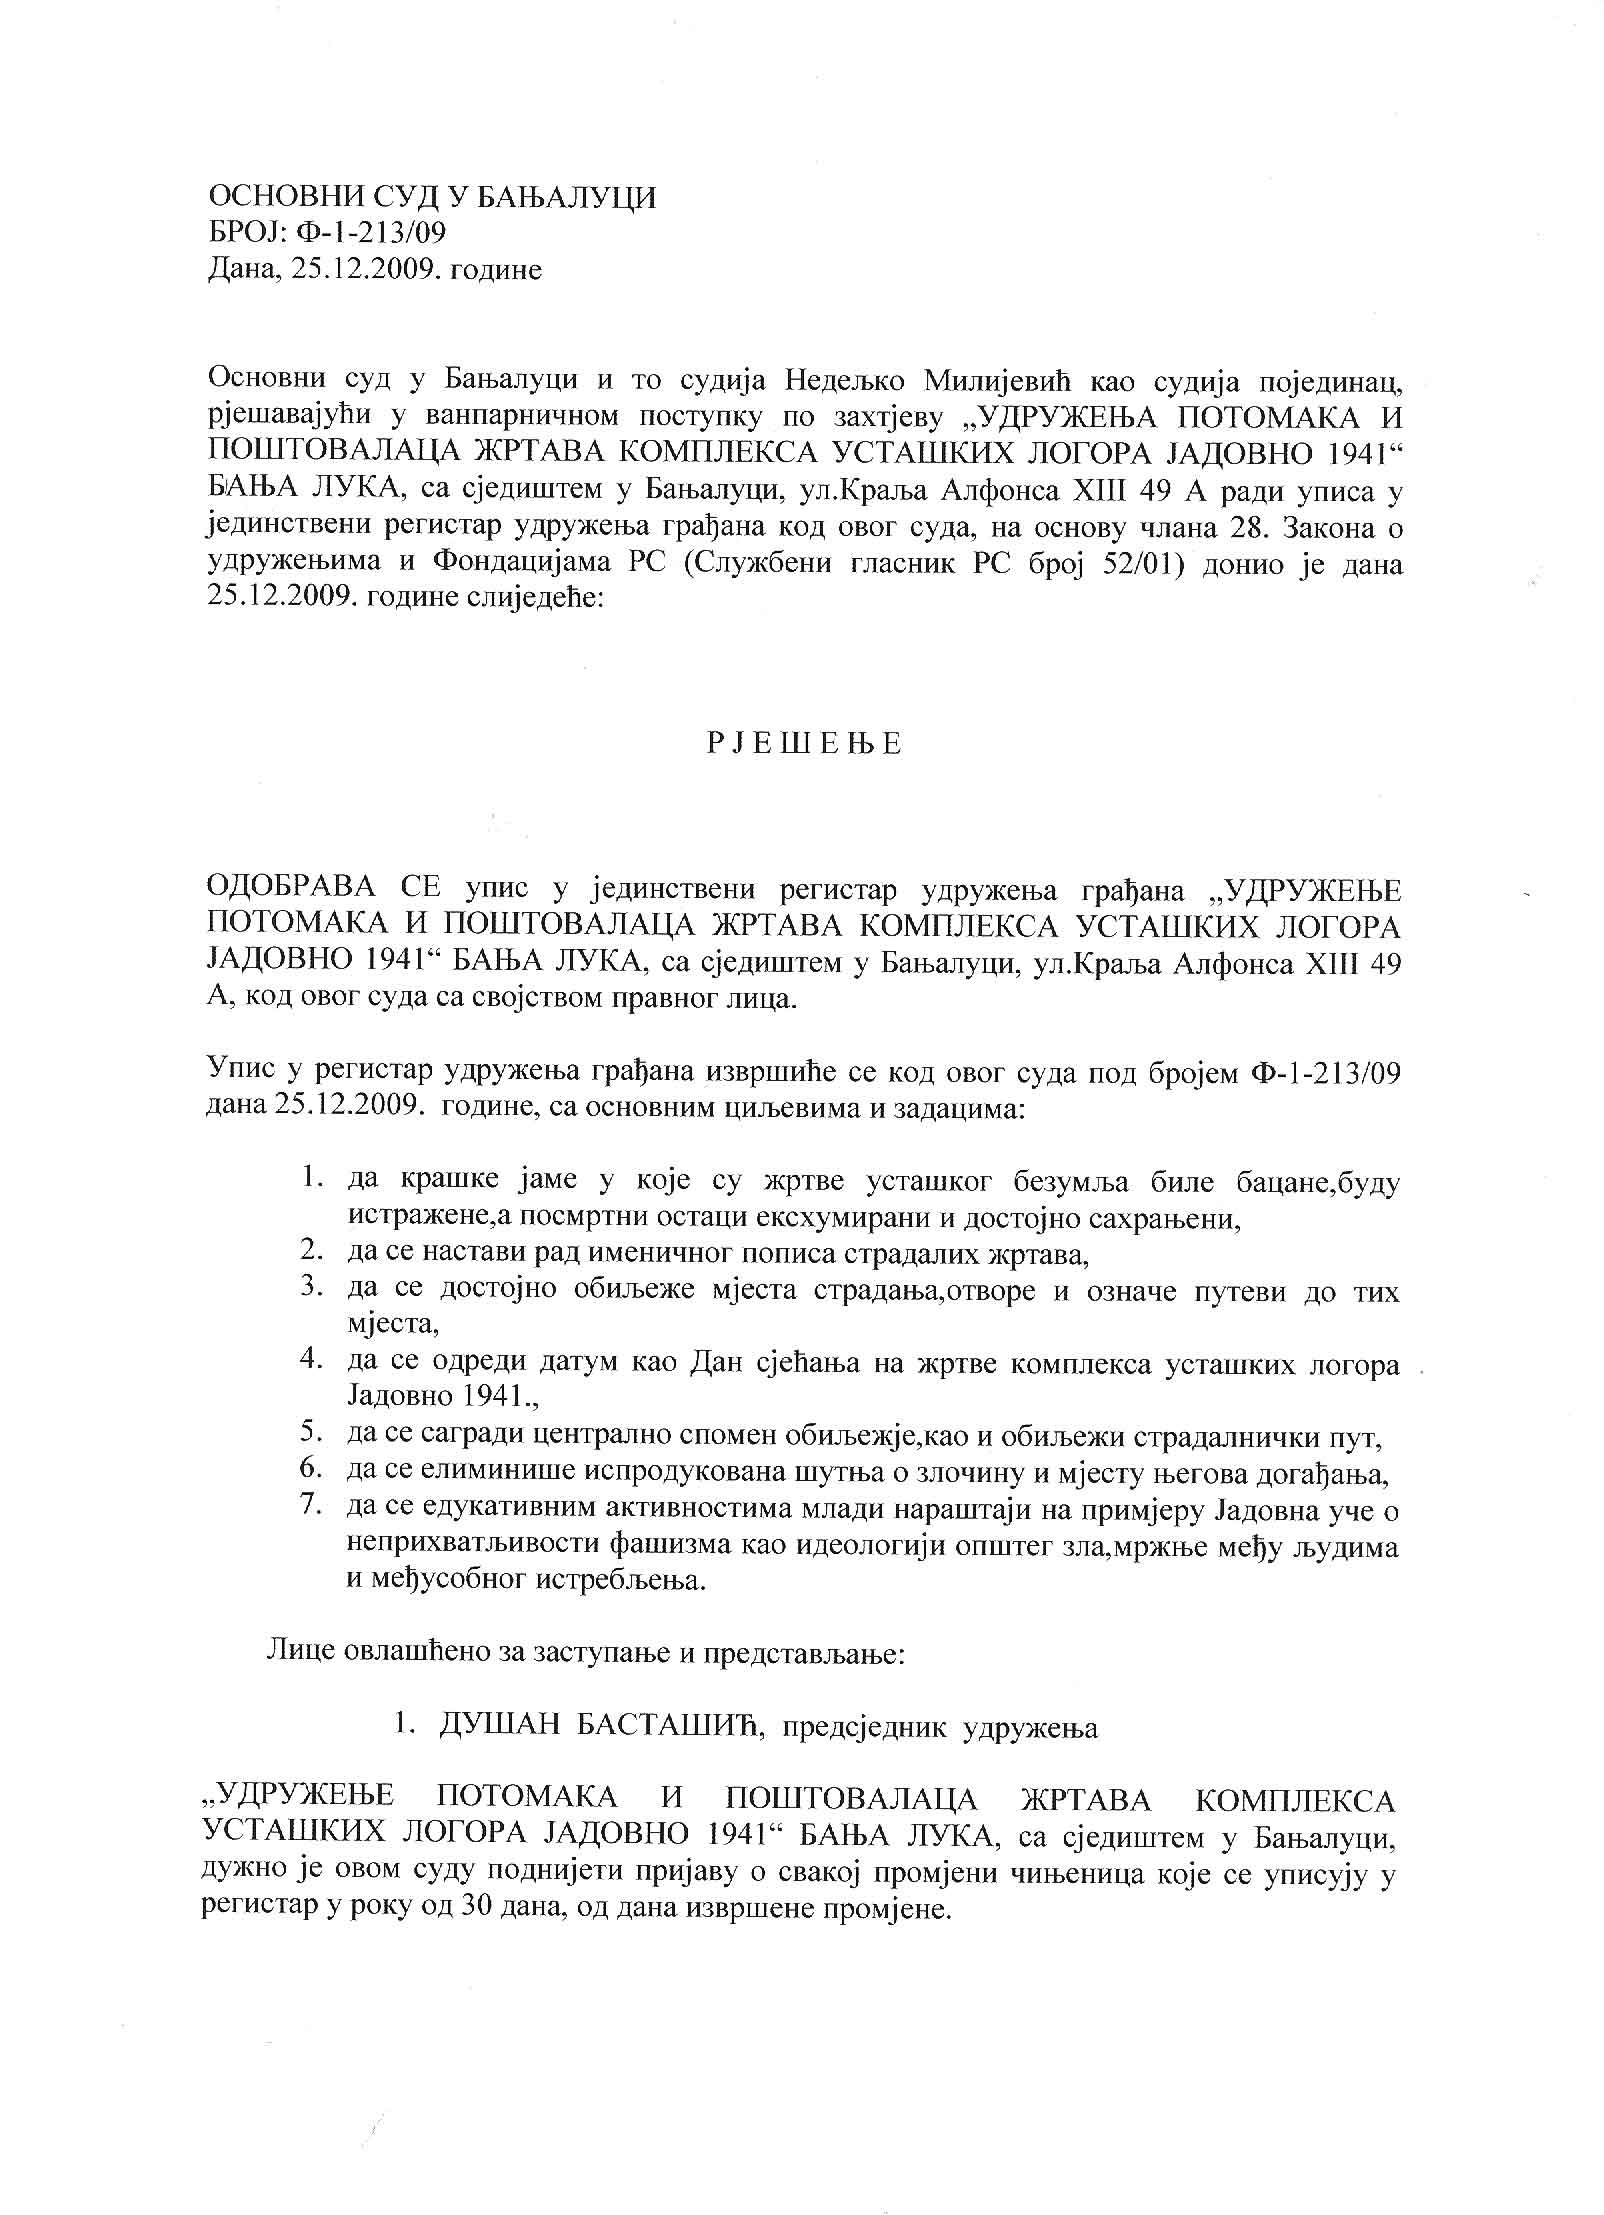 Судска регистрациjа удружења Јадовно 1941.